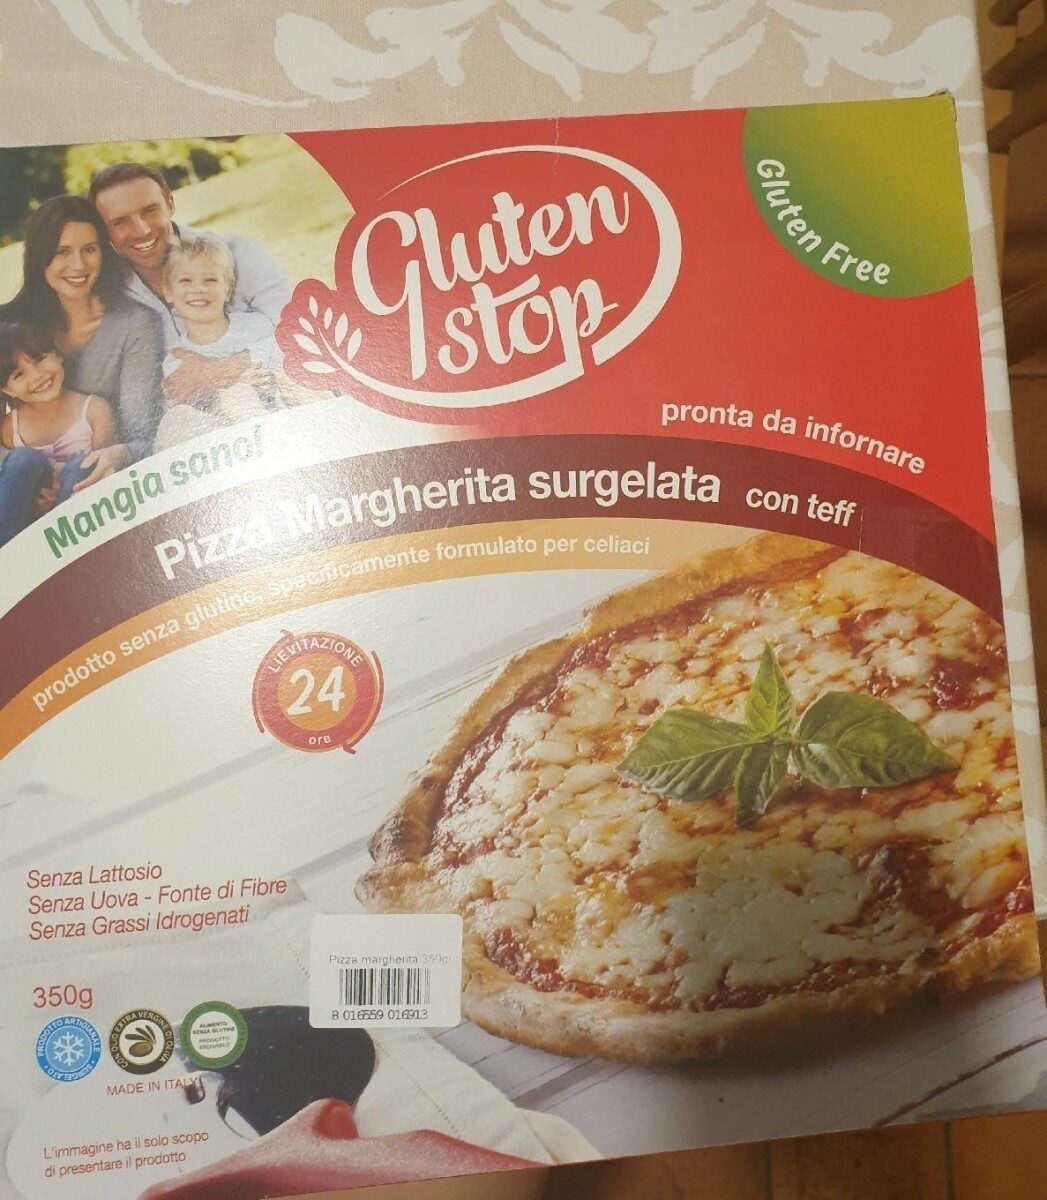 Pizza margherita surgelata con teff - Product - it